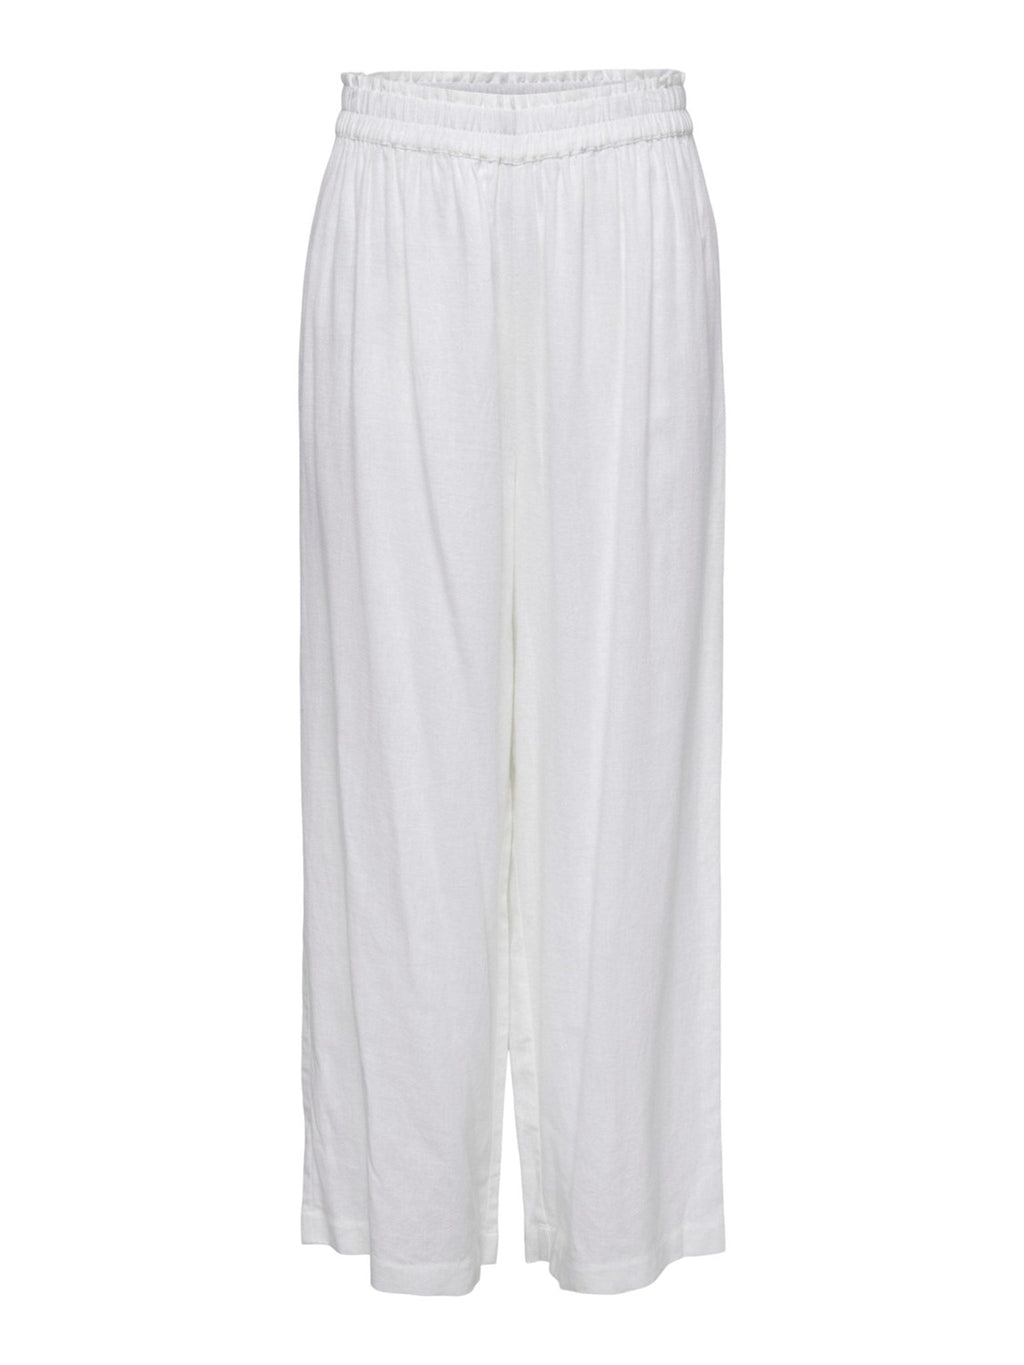 Tokijske lanene hlače - svijetlo bijele boje